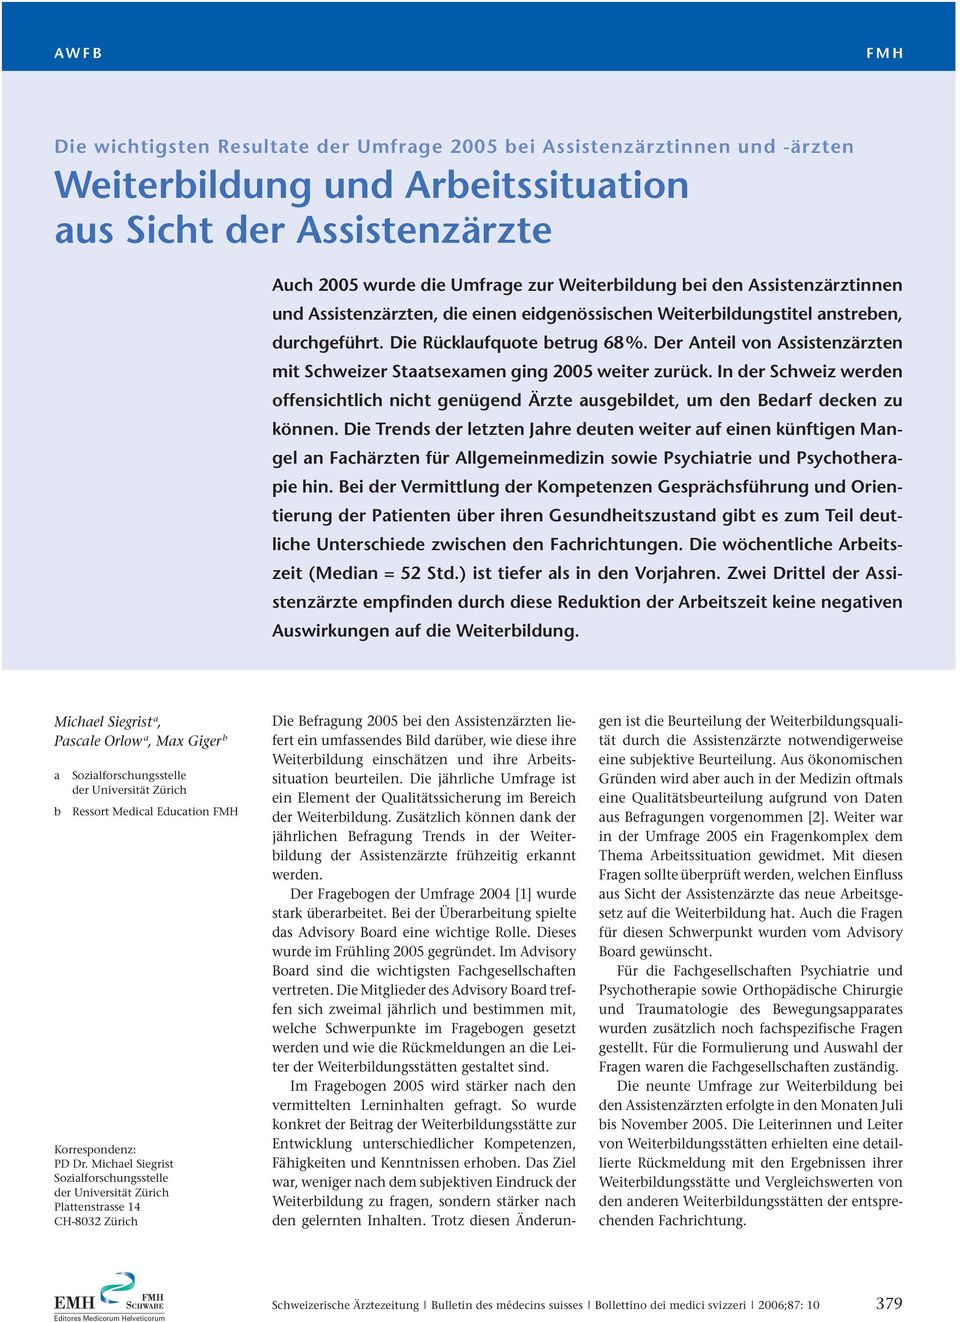 Der Anteil von Assistenzärzten mit Schweizer Staatsexamen ging 2005 weiter zurück. In der Schweiz werden offensichtlich nicht genügend Ärzte ausgebildet, um den Bedarf decken zu können.